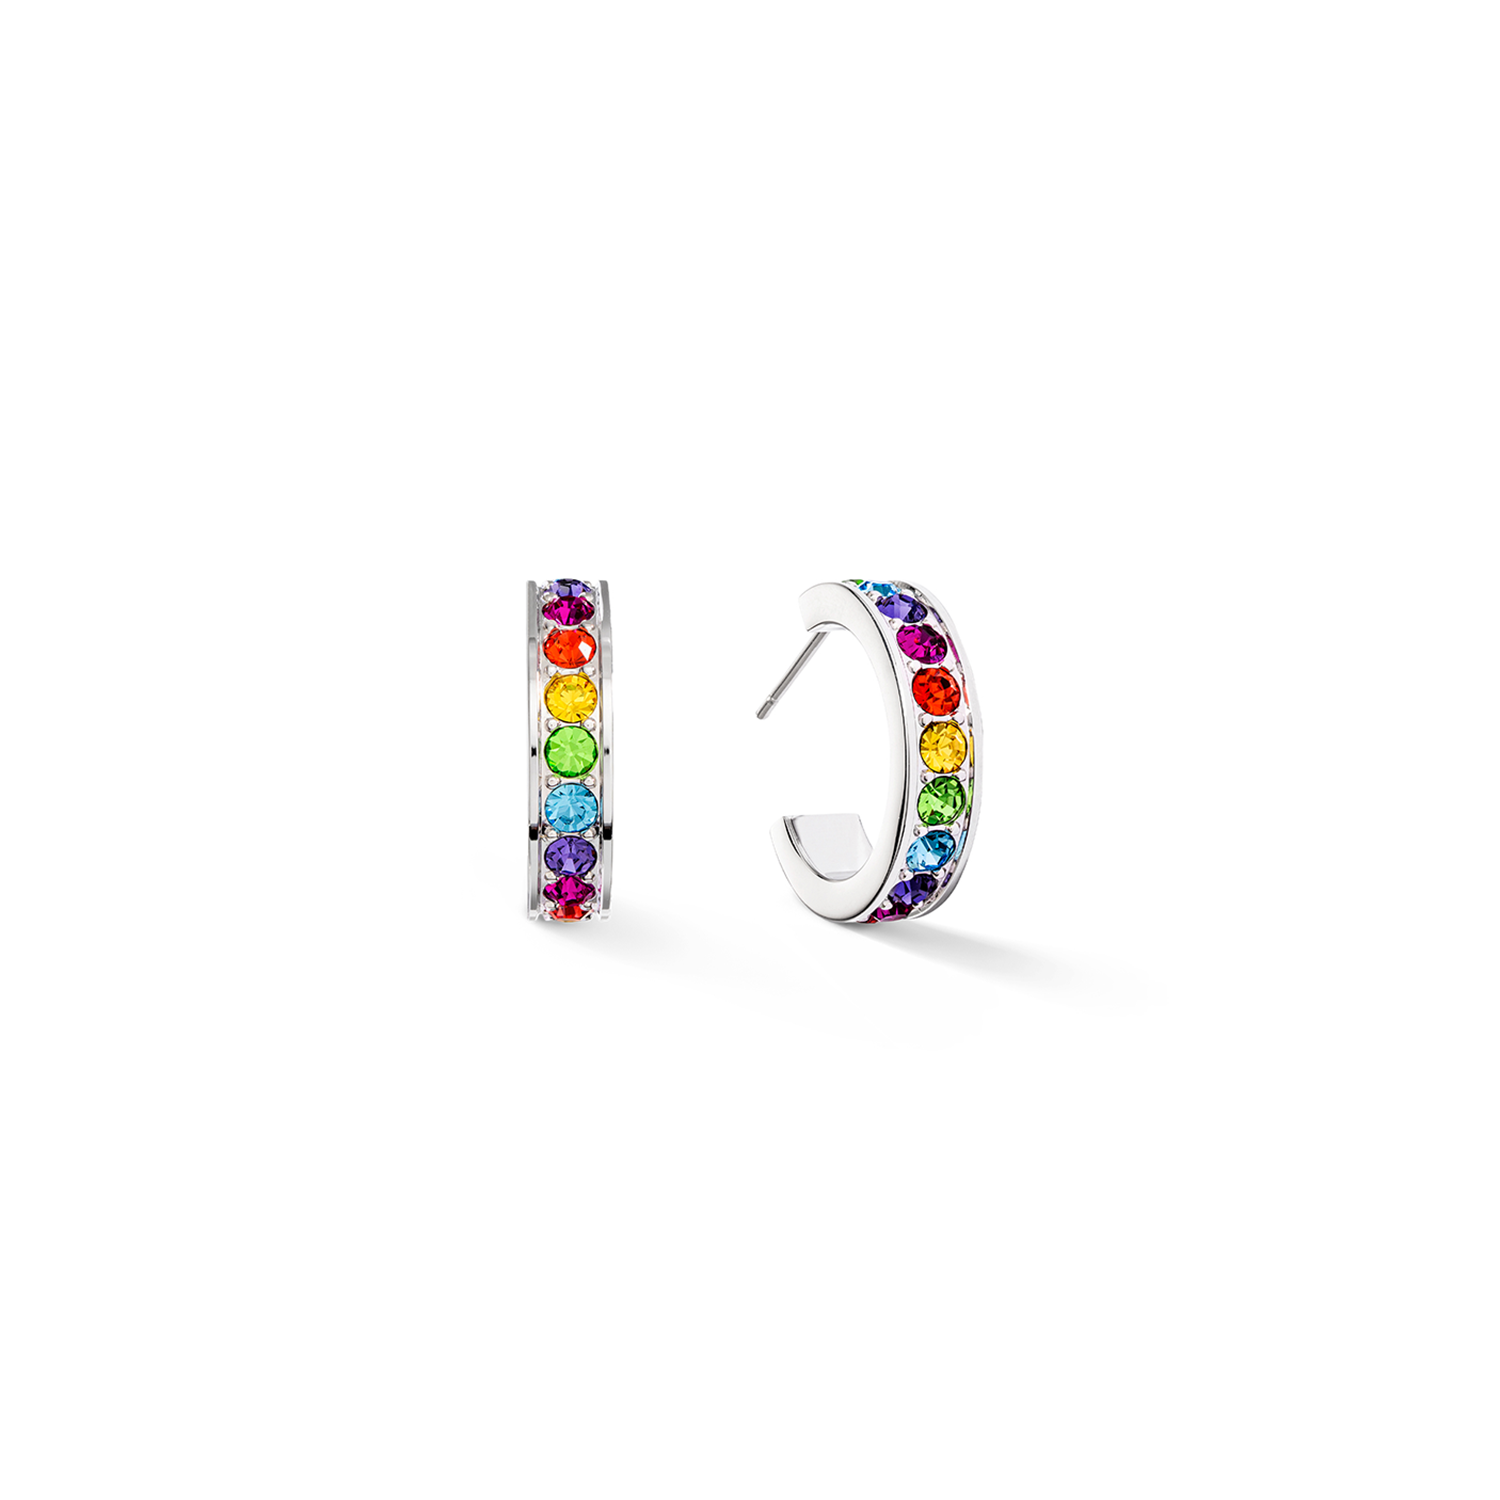 Hoop Wide Stainless Steel & Bright Rainbow Crystal Pavé Earrings 0131/21_1517